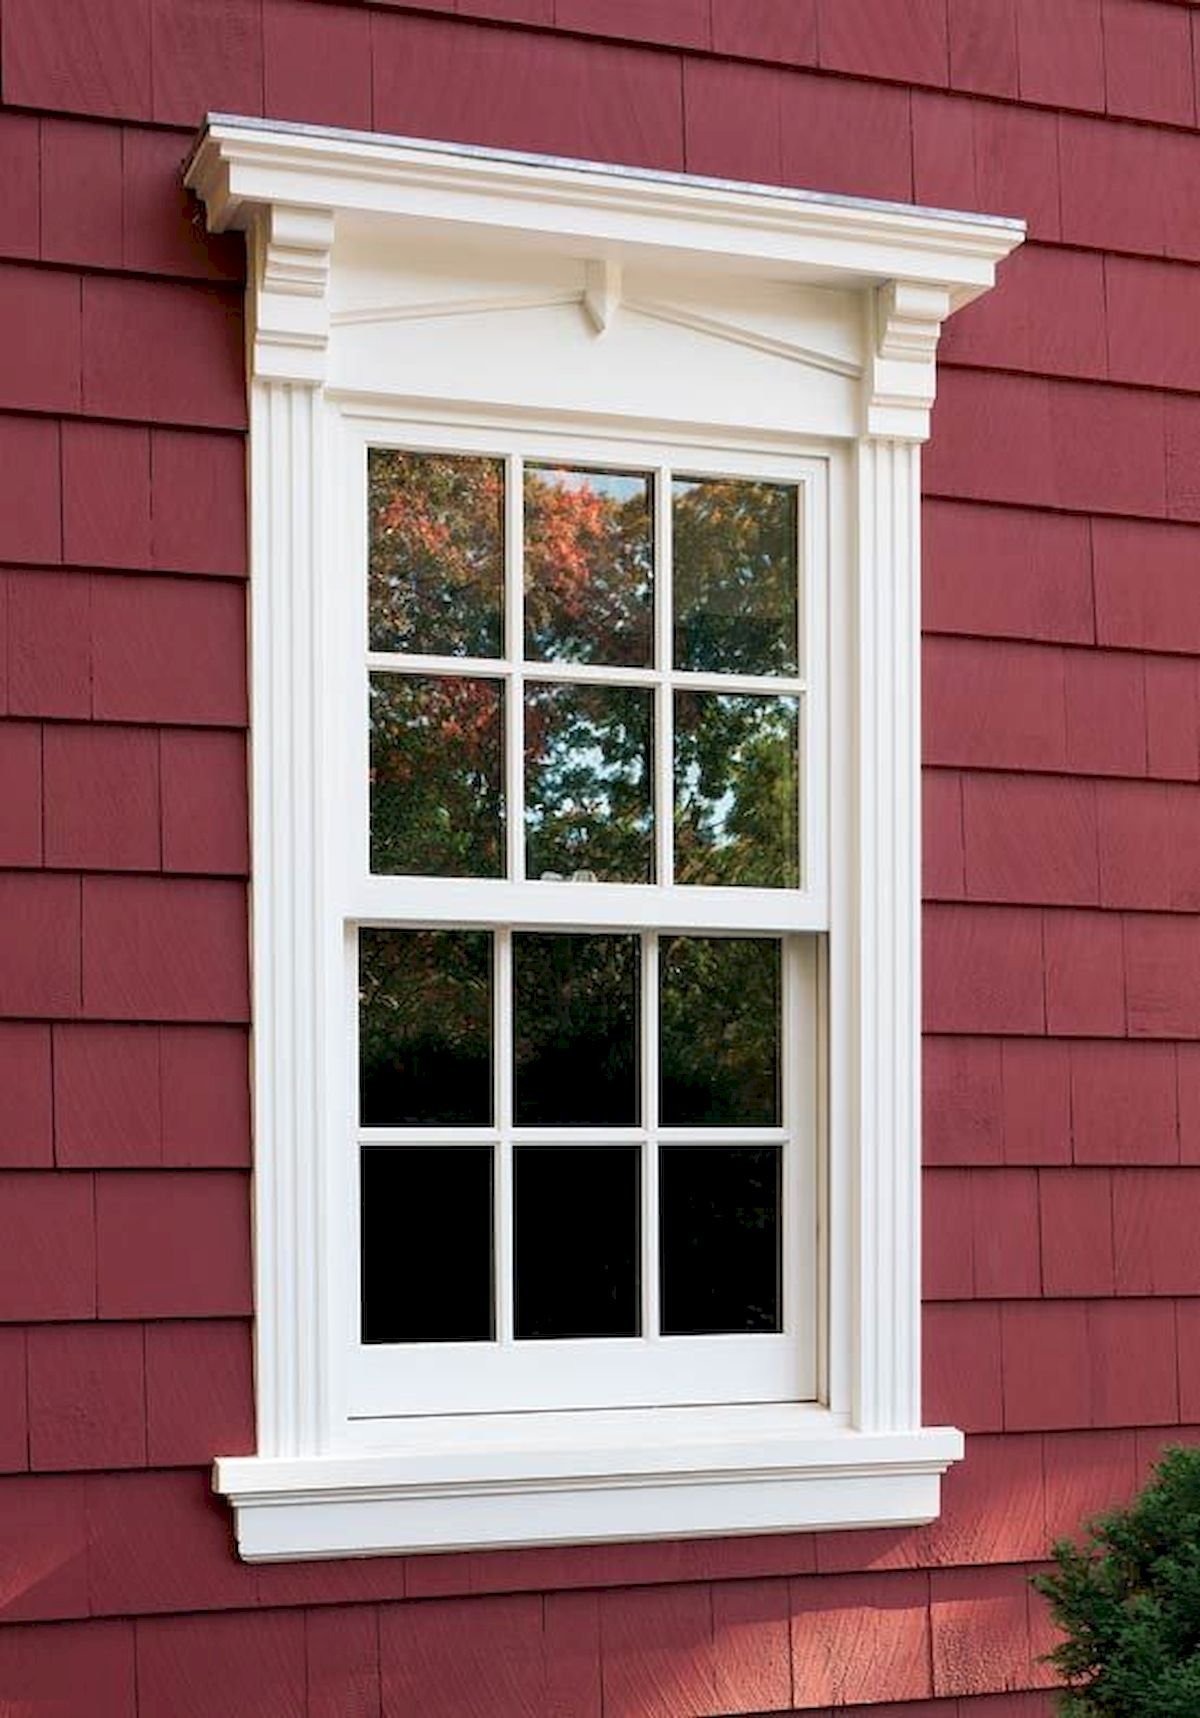 Наличники на окна для внешней отделки купить. Наличники на окна. Наличники на окна деревянные. Декоративные наличники на окна. Деревянное обрамление окна.